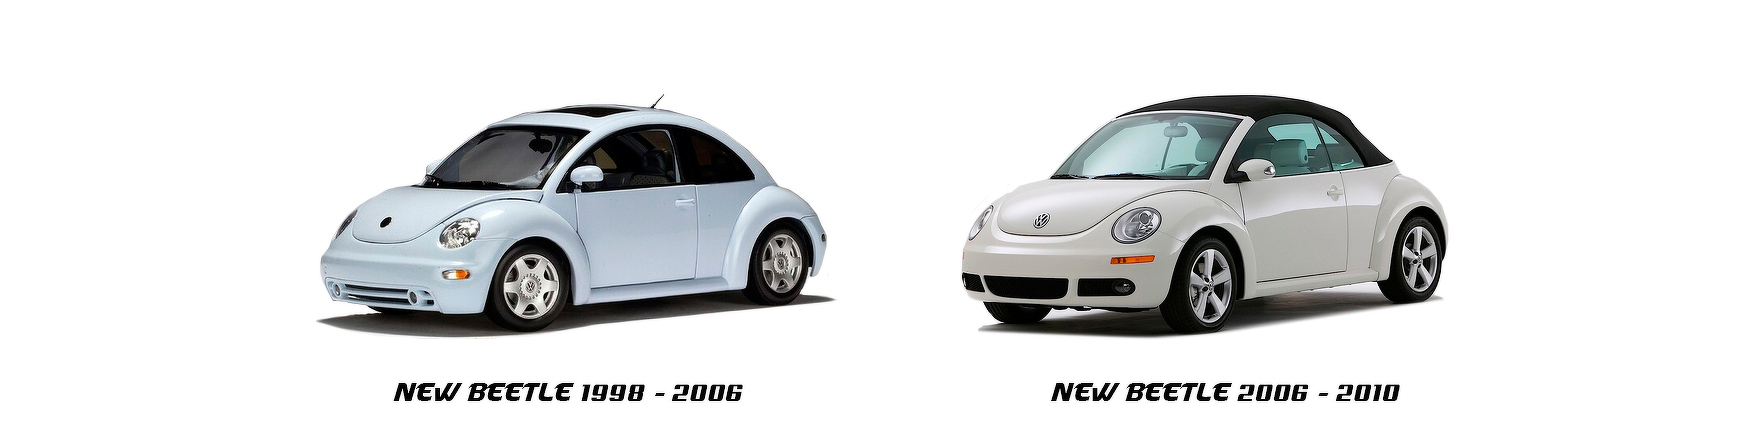 Piezas y Recambios de Volkswagen New Beetle de 2005 a 2010 | Veramauto.es